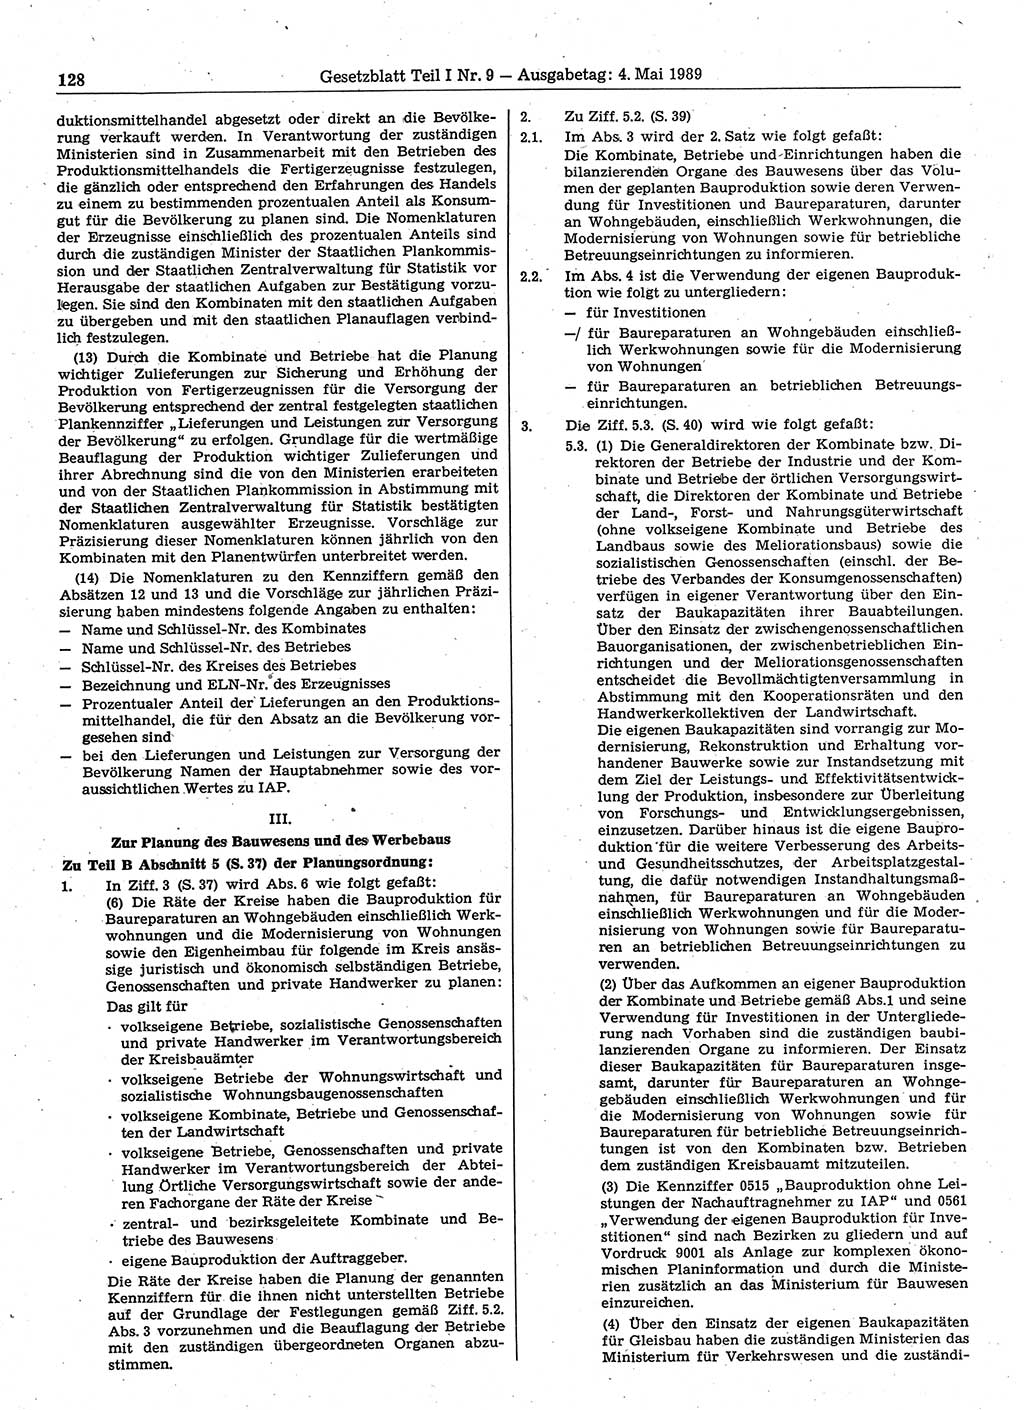 Gesetzblatt (GBl.) der Deutschen Demokratischen Republik (DDR) Teil Ⅰ 1989, Seite 128 (GBl. DDR Ⅰ 1989, S. 128)